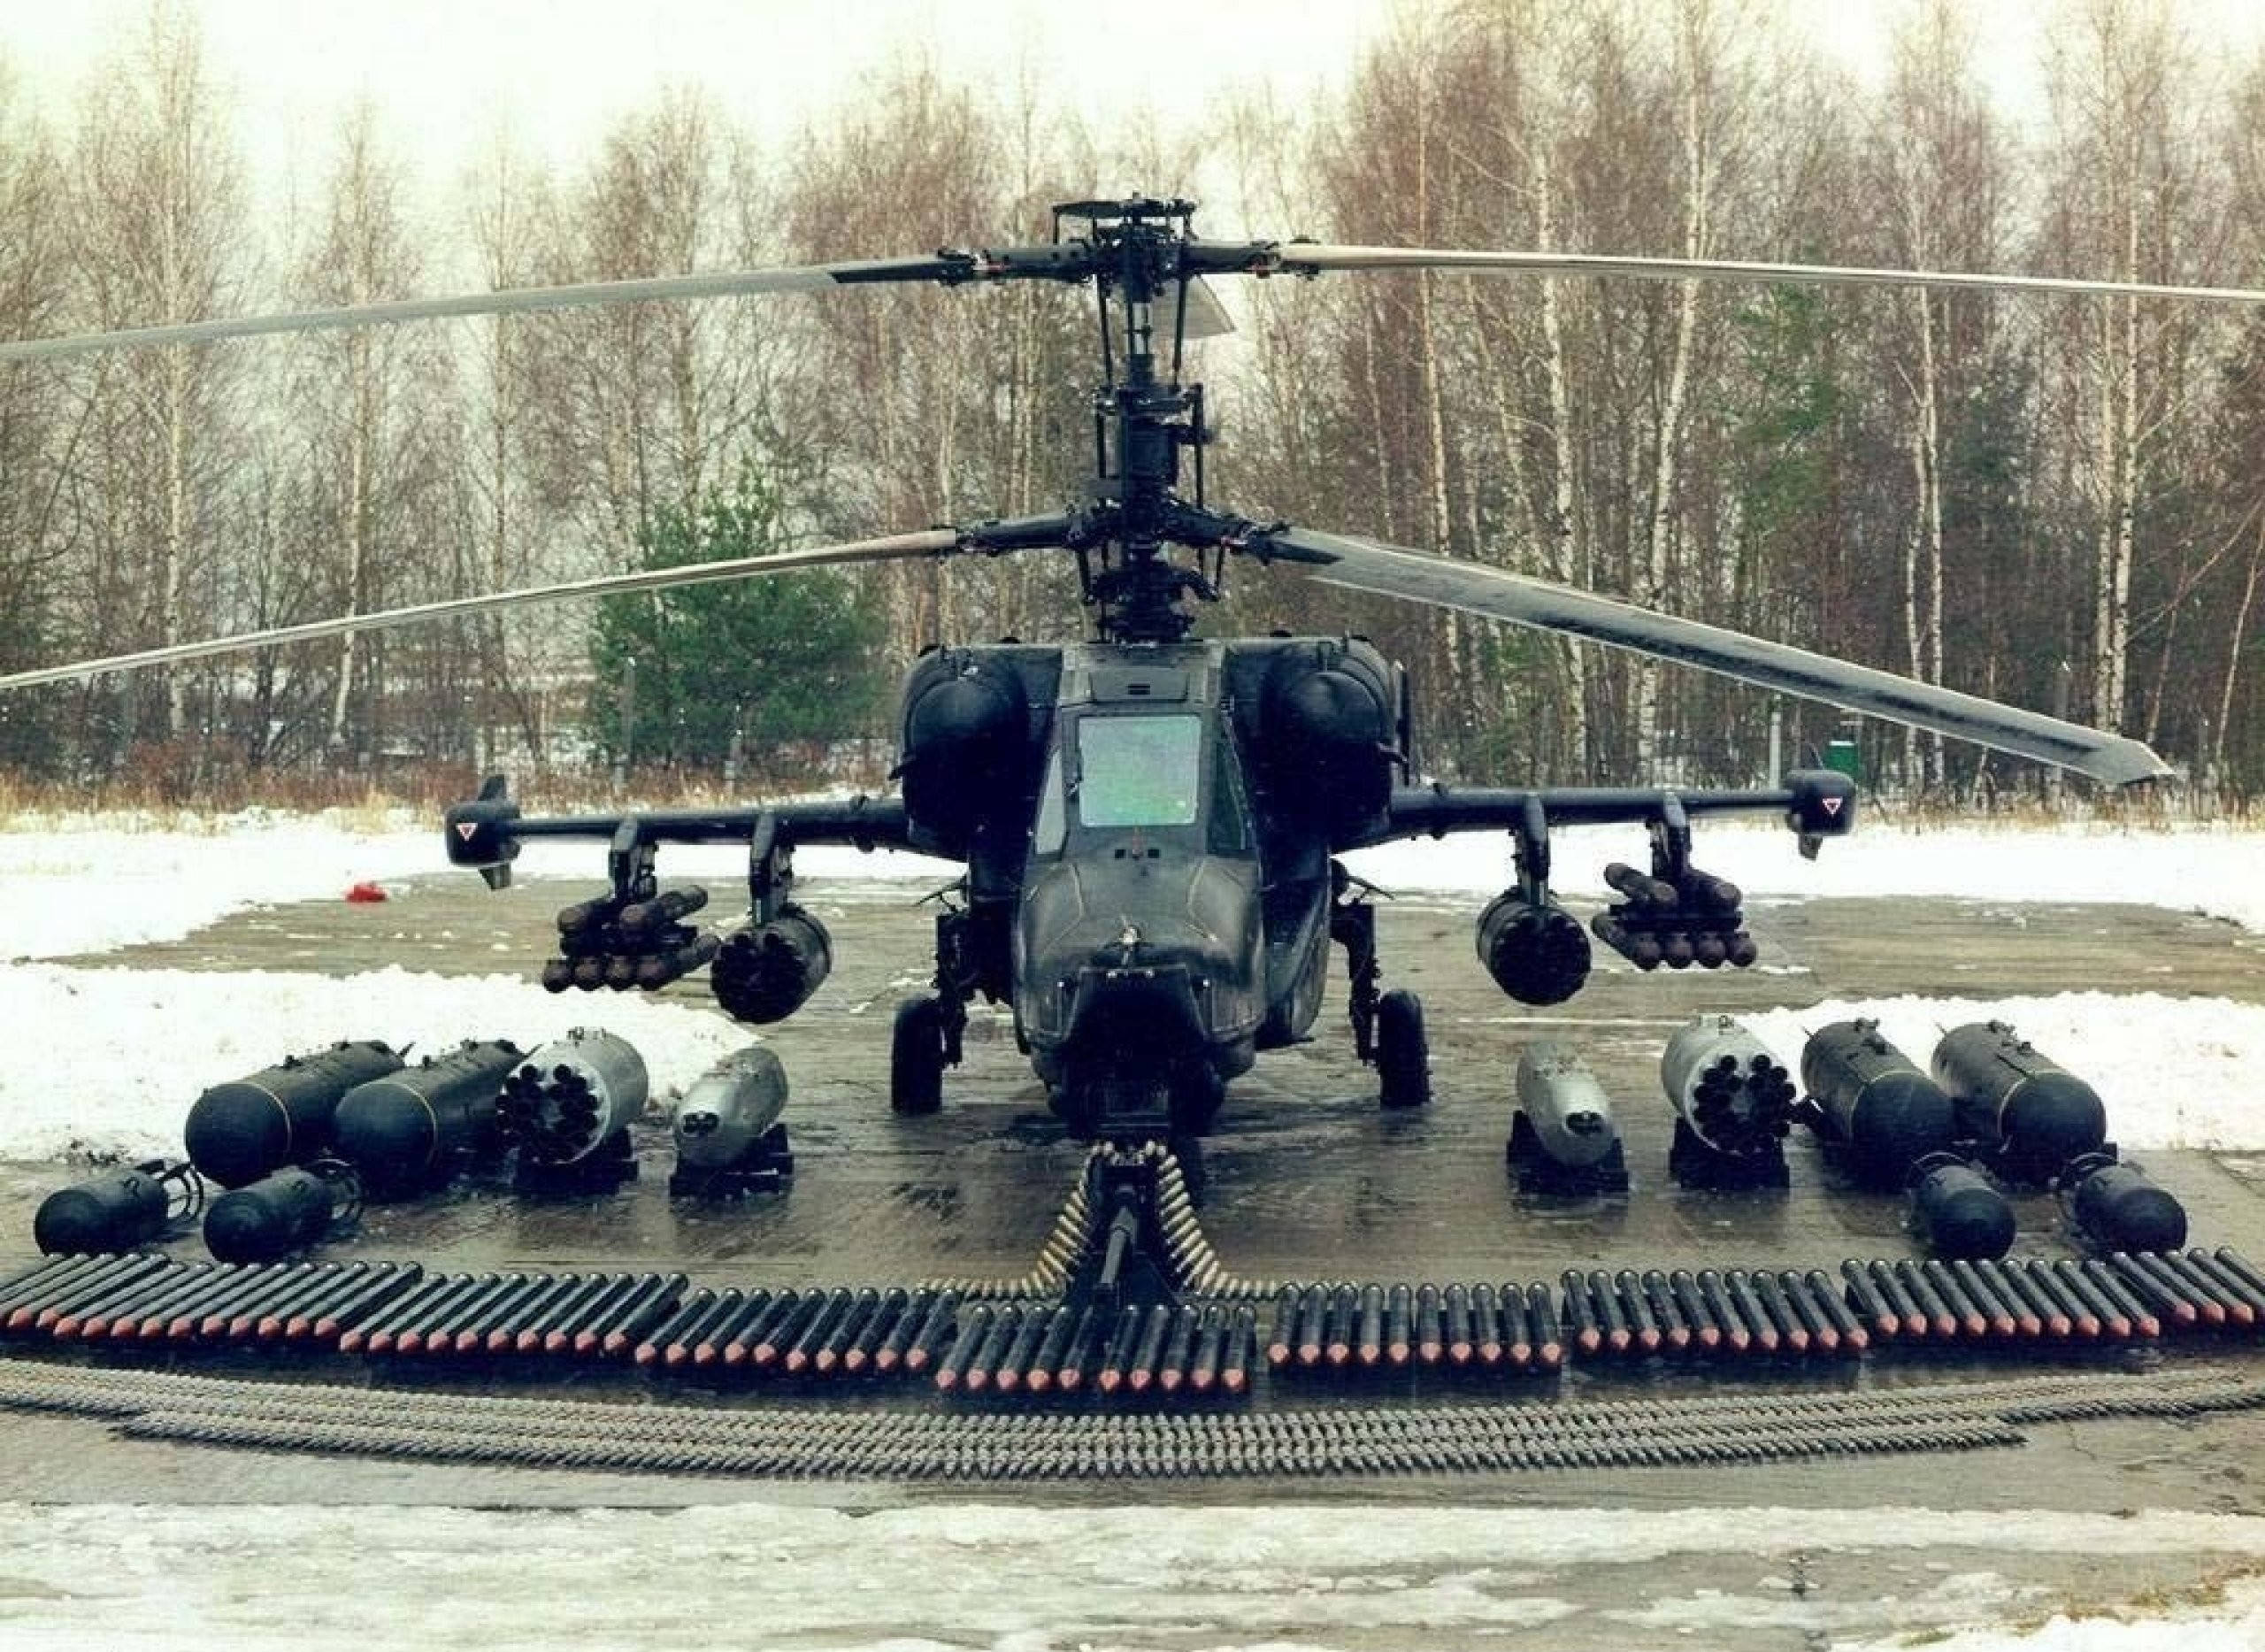 的一种中型第三代武装直升机,它是俄罗斯/苏联第一种专用武装直升机